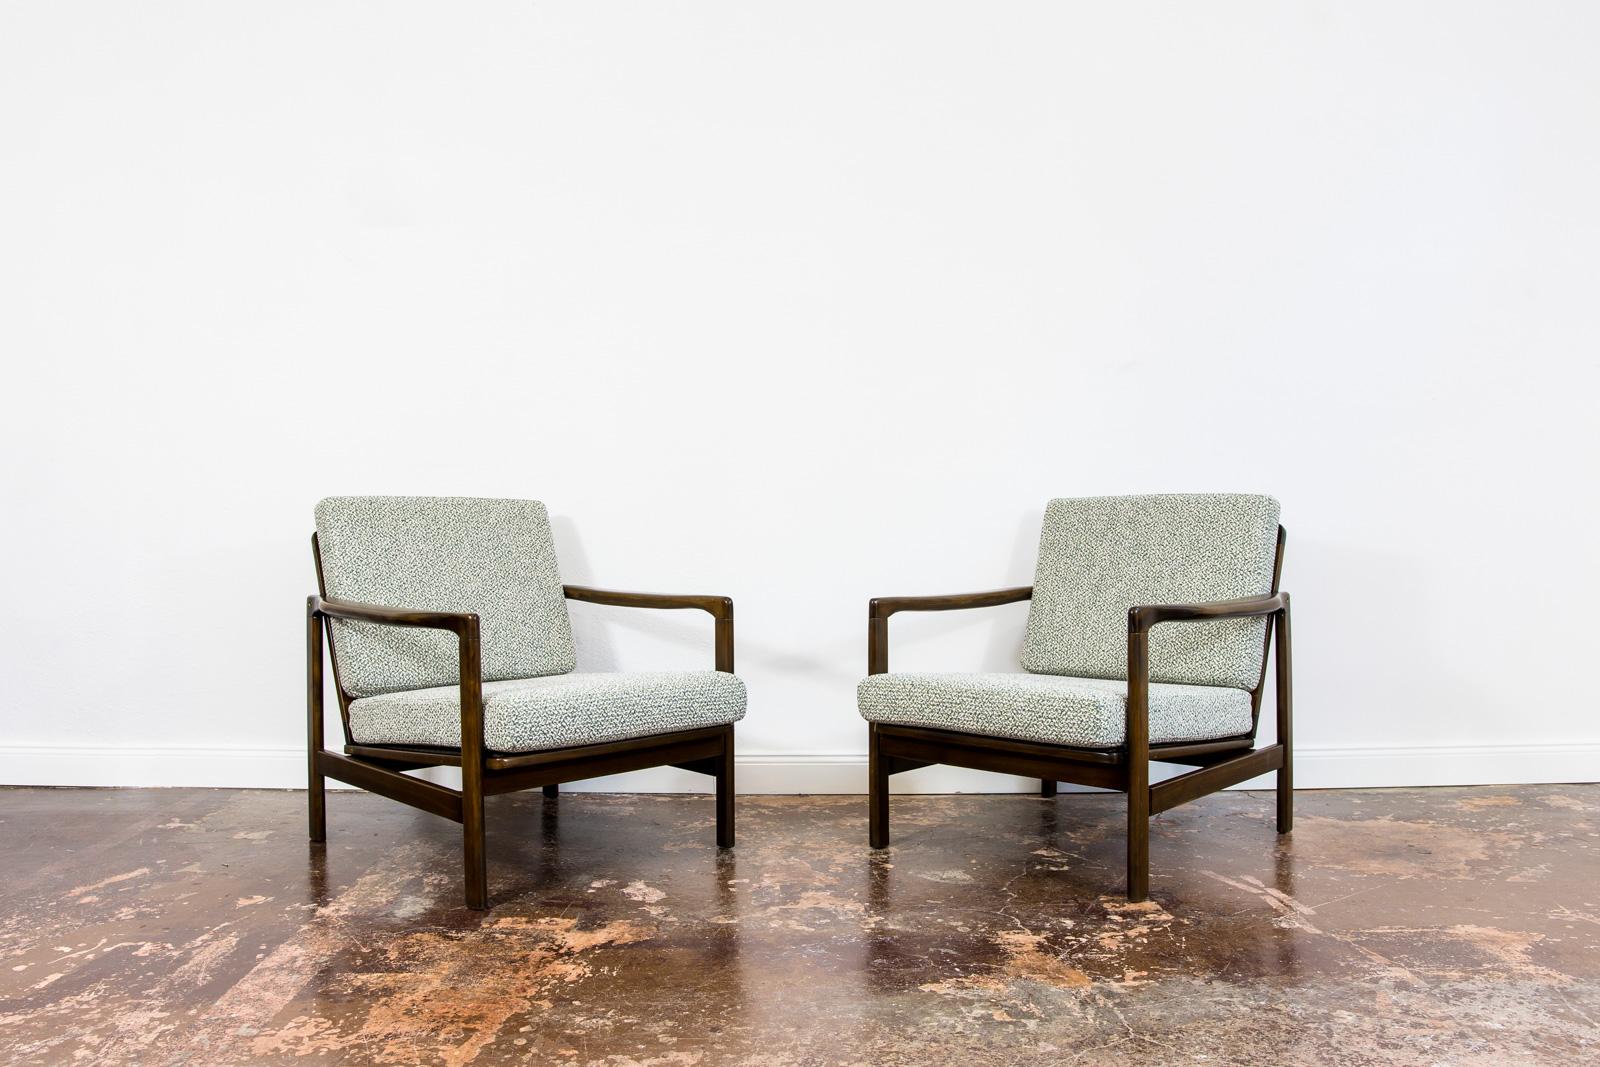 Paire de fauteuils restaurés par Zenon Bączyk type B7522 , années 1960. Pologne
Reupholstered green and white woven fabric (tissu vert et blanc).
Les cadres en bois massif ont été entièrement restaurés et remis à neuf.
Nous offrons la possibilité de